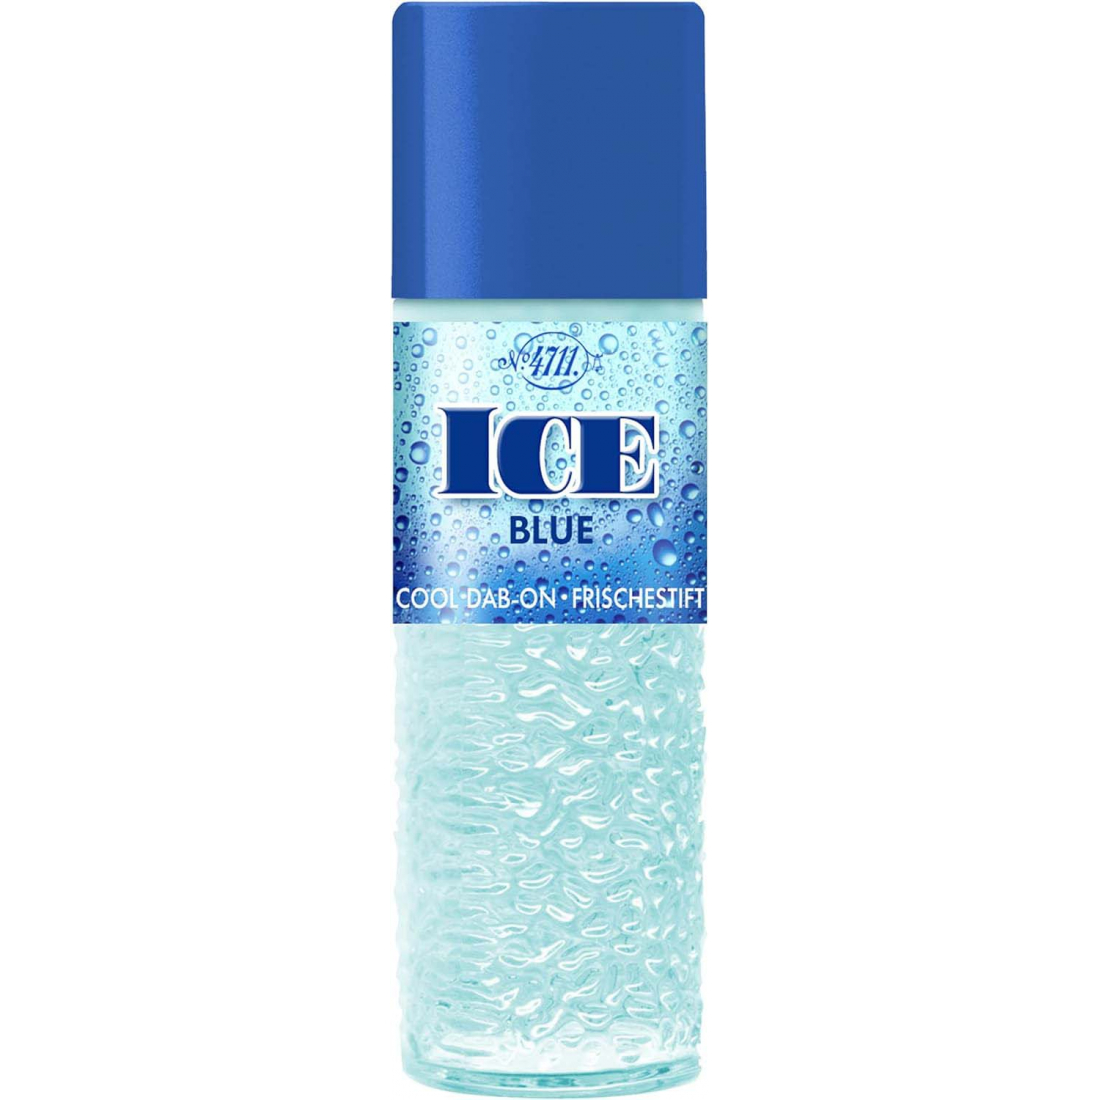 'Ice Blue Cool' Eau de Cologne - 40 ml